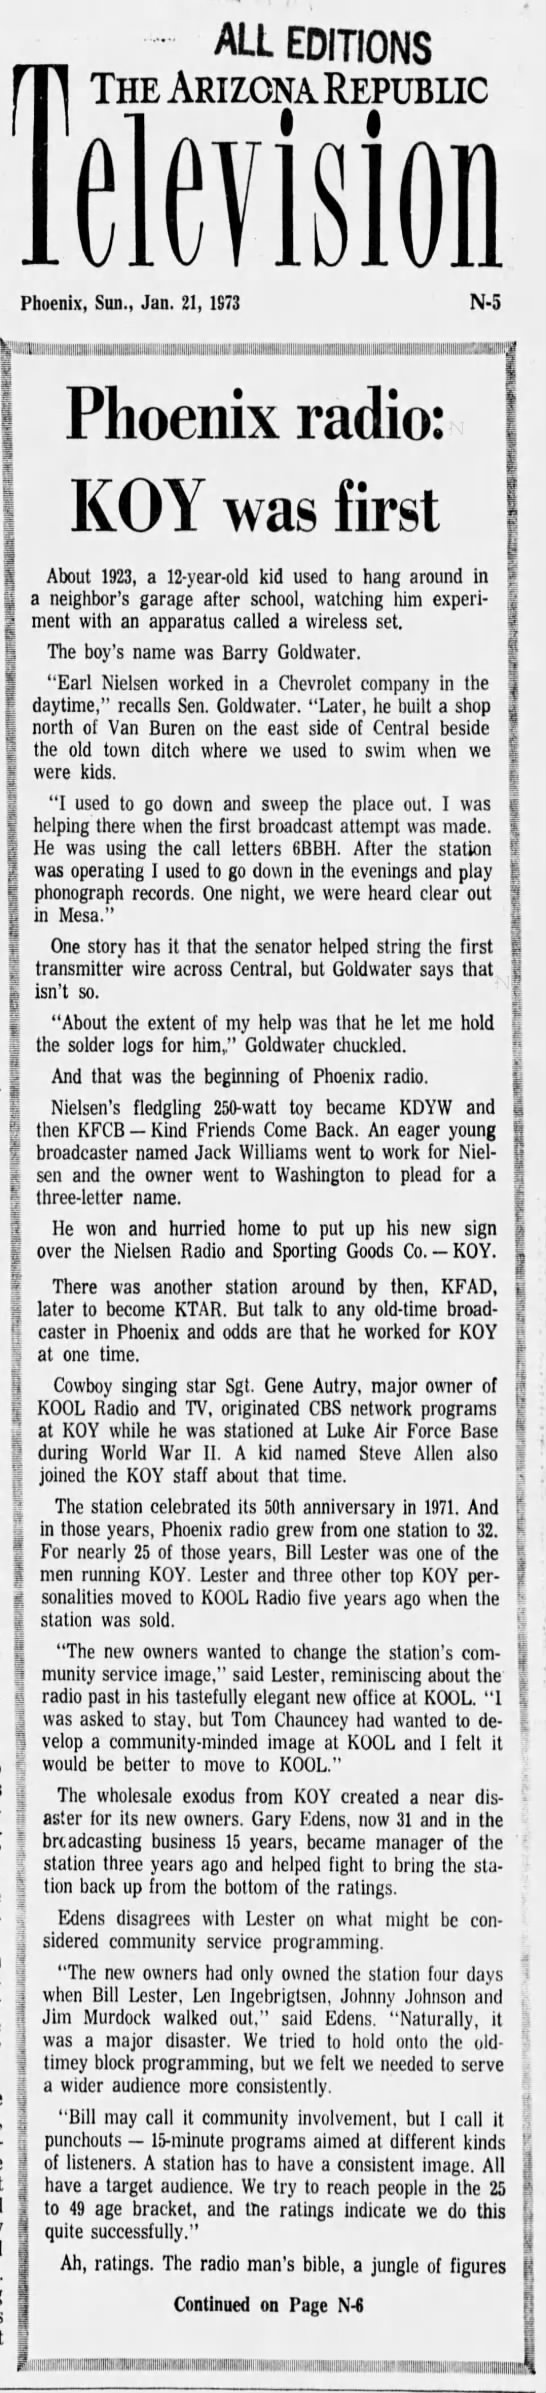 Phoenix radio: KOY was first - 